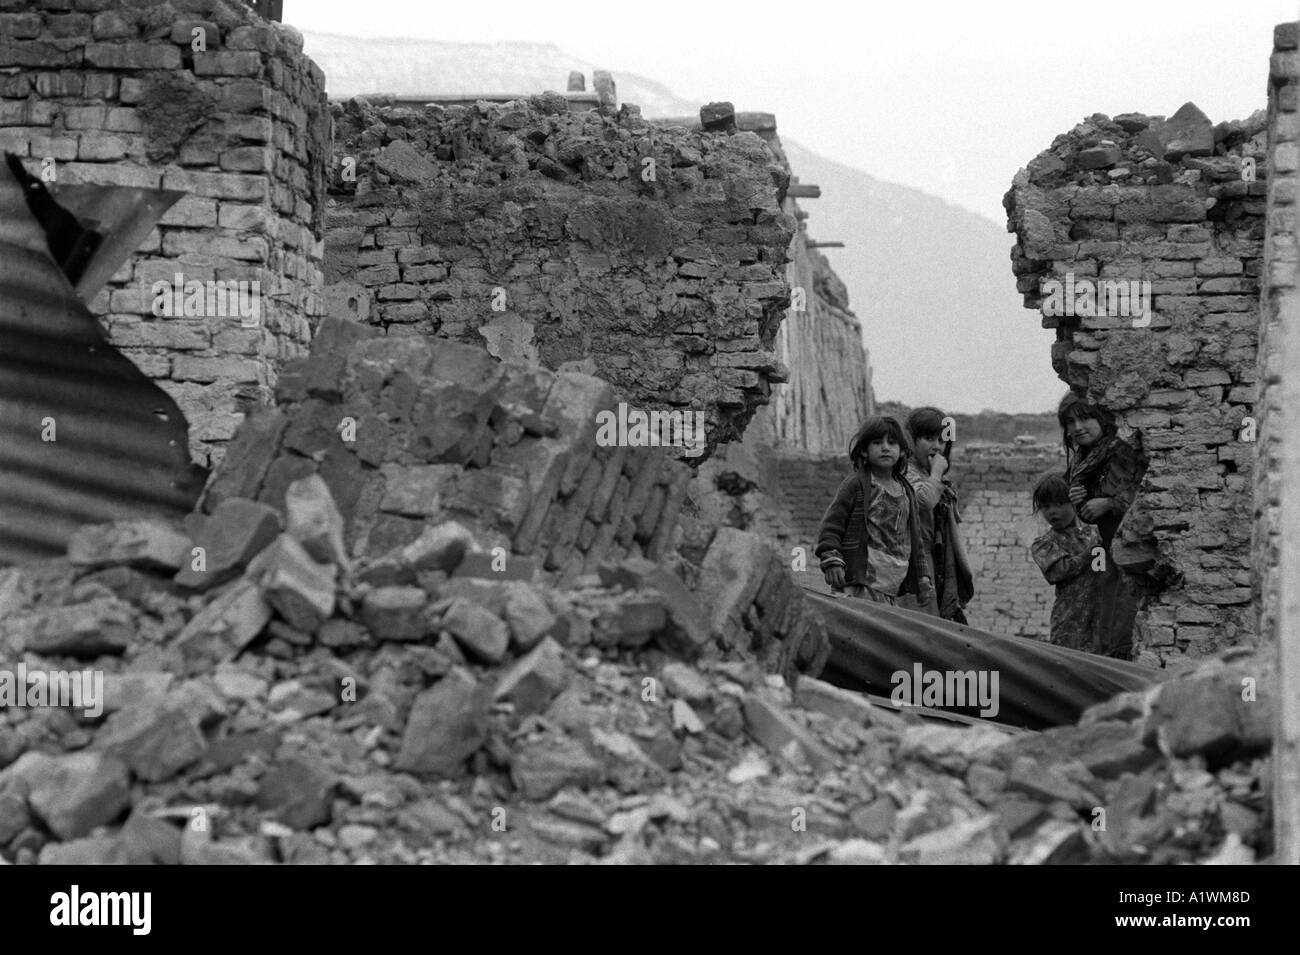 Jordi Maywan Kabul Afghanistan 1996 Black and white photo of children,three girls,  standing in ruins . Stock Photo